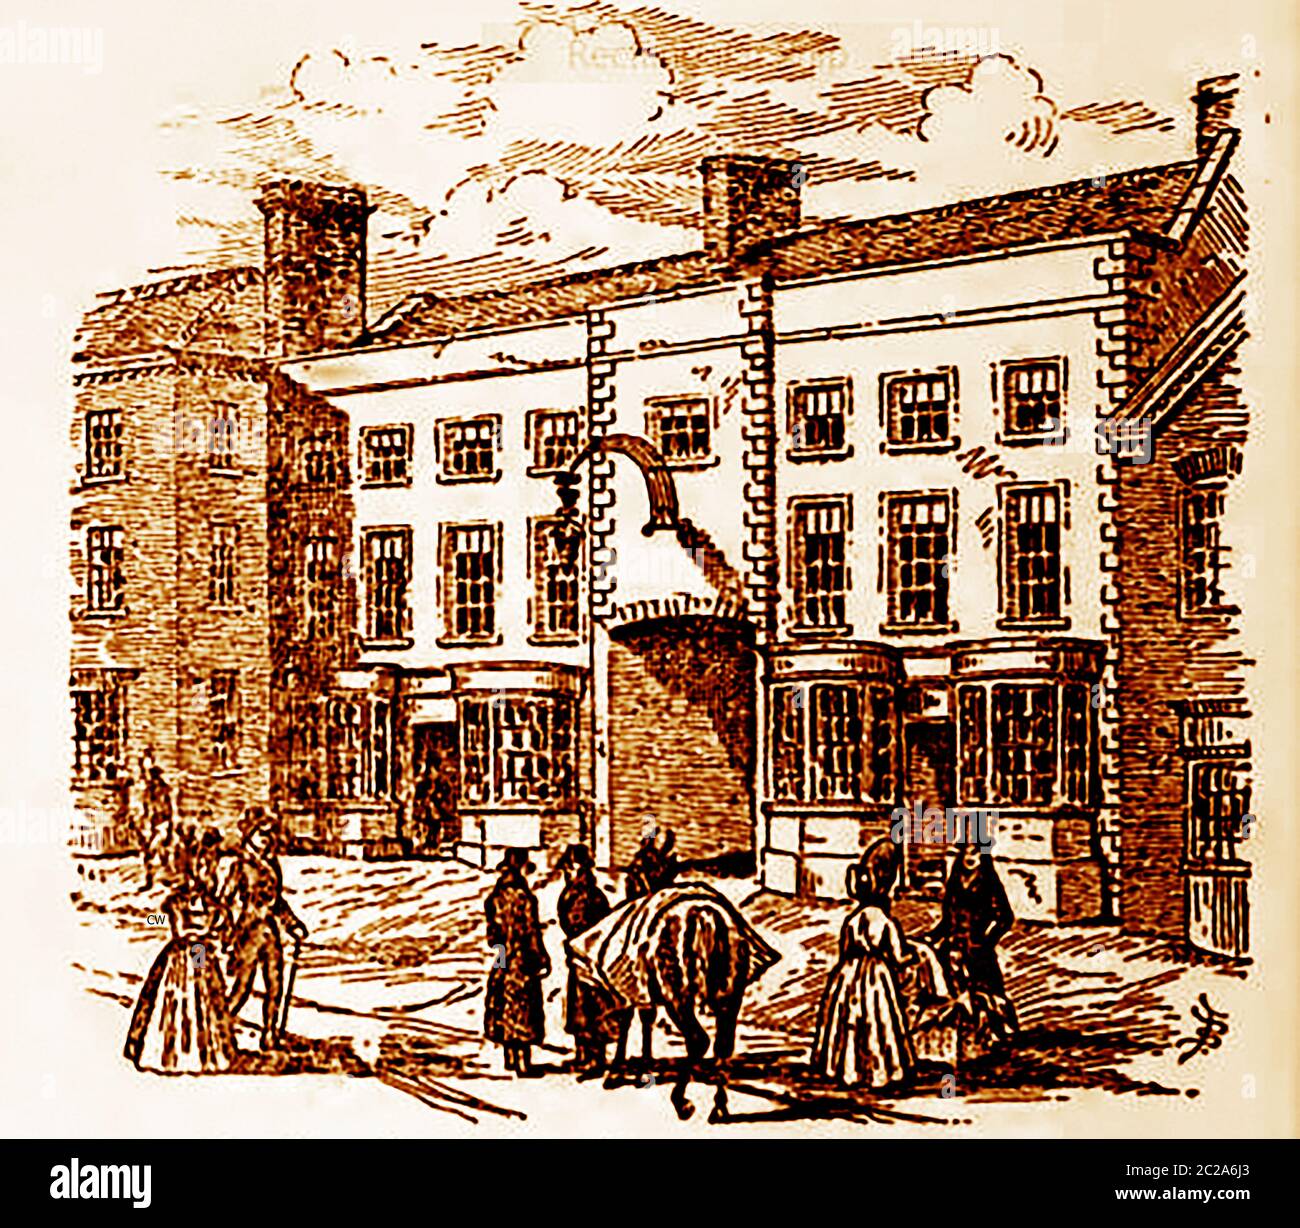 Eine historische viktorianische Skizze des Royal Hotel, Briggate, Leeds. Großbritannien (früher The New King's Arms), um es von seinem nahegelegenen, älteren Nachbarn The Old King's Arms zu unterscheiden. In der frühen Coaching-Ära war es als New King's Arms Inn bekannt und im Jahr 1765, dem Jahr, in dem Trainer begann zum ersten Mal aus dem Haus zu laufen, als der Vermieter Name Myers war es hieß New Inn. Witwe Cowling und William Lodge folgte ihm als Lizenznehmer. Witwe Cowling kam später zurück und änderte seinen Namen in Cowling's Hotel and Tavern. Stockfoto